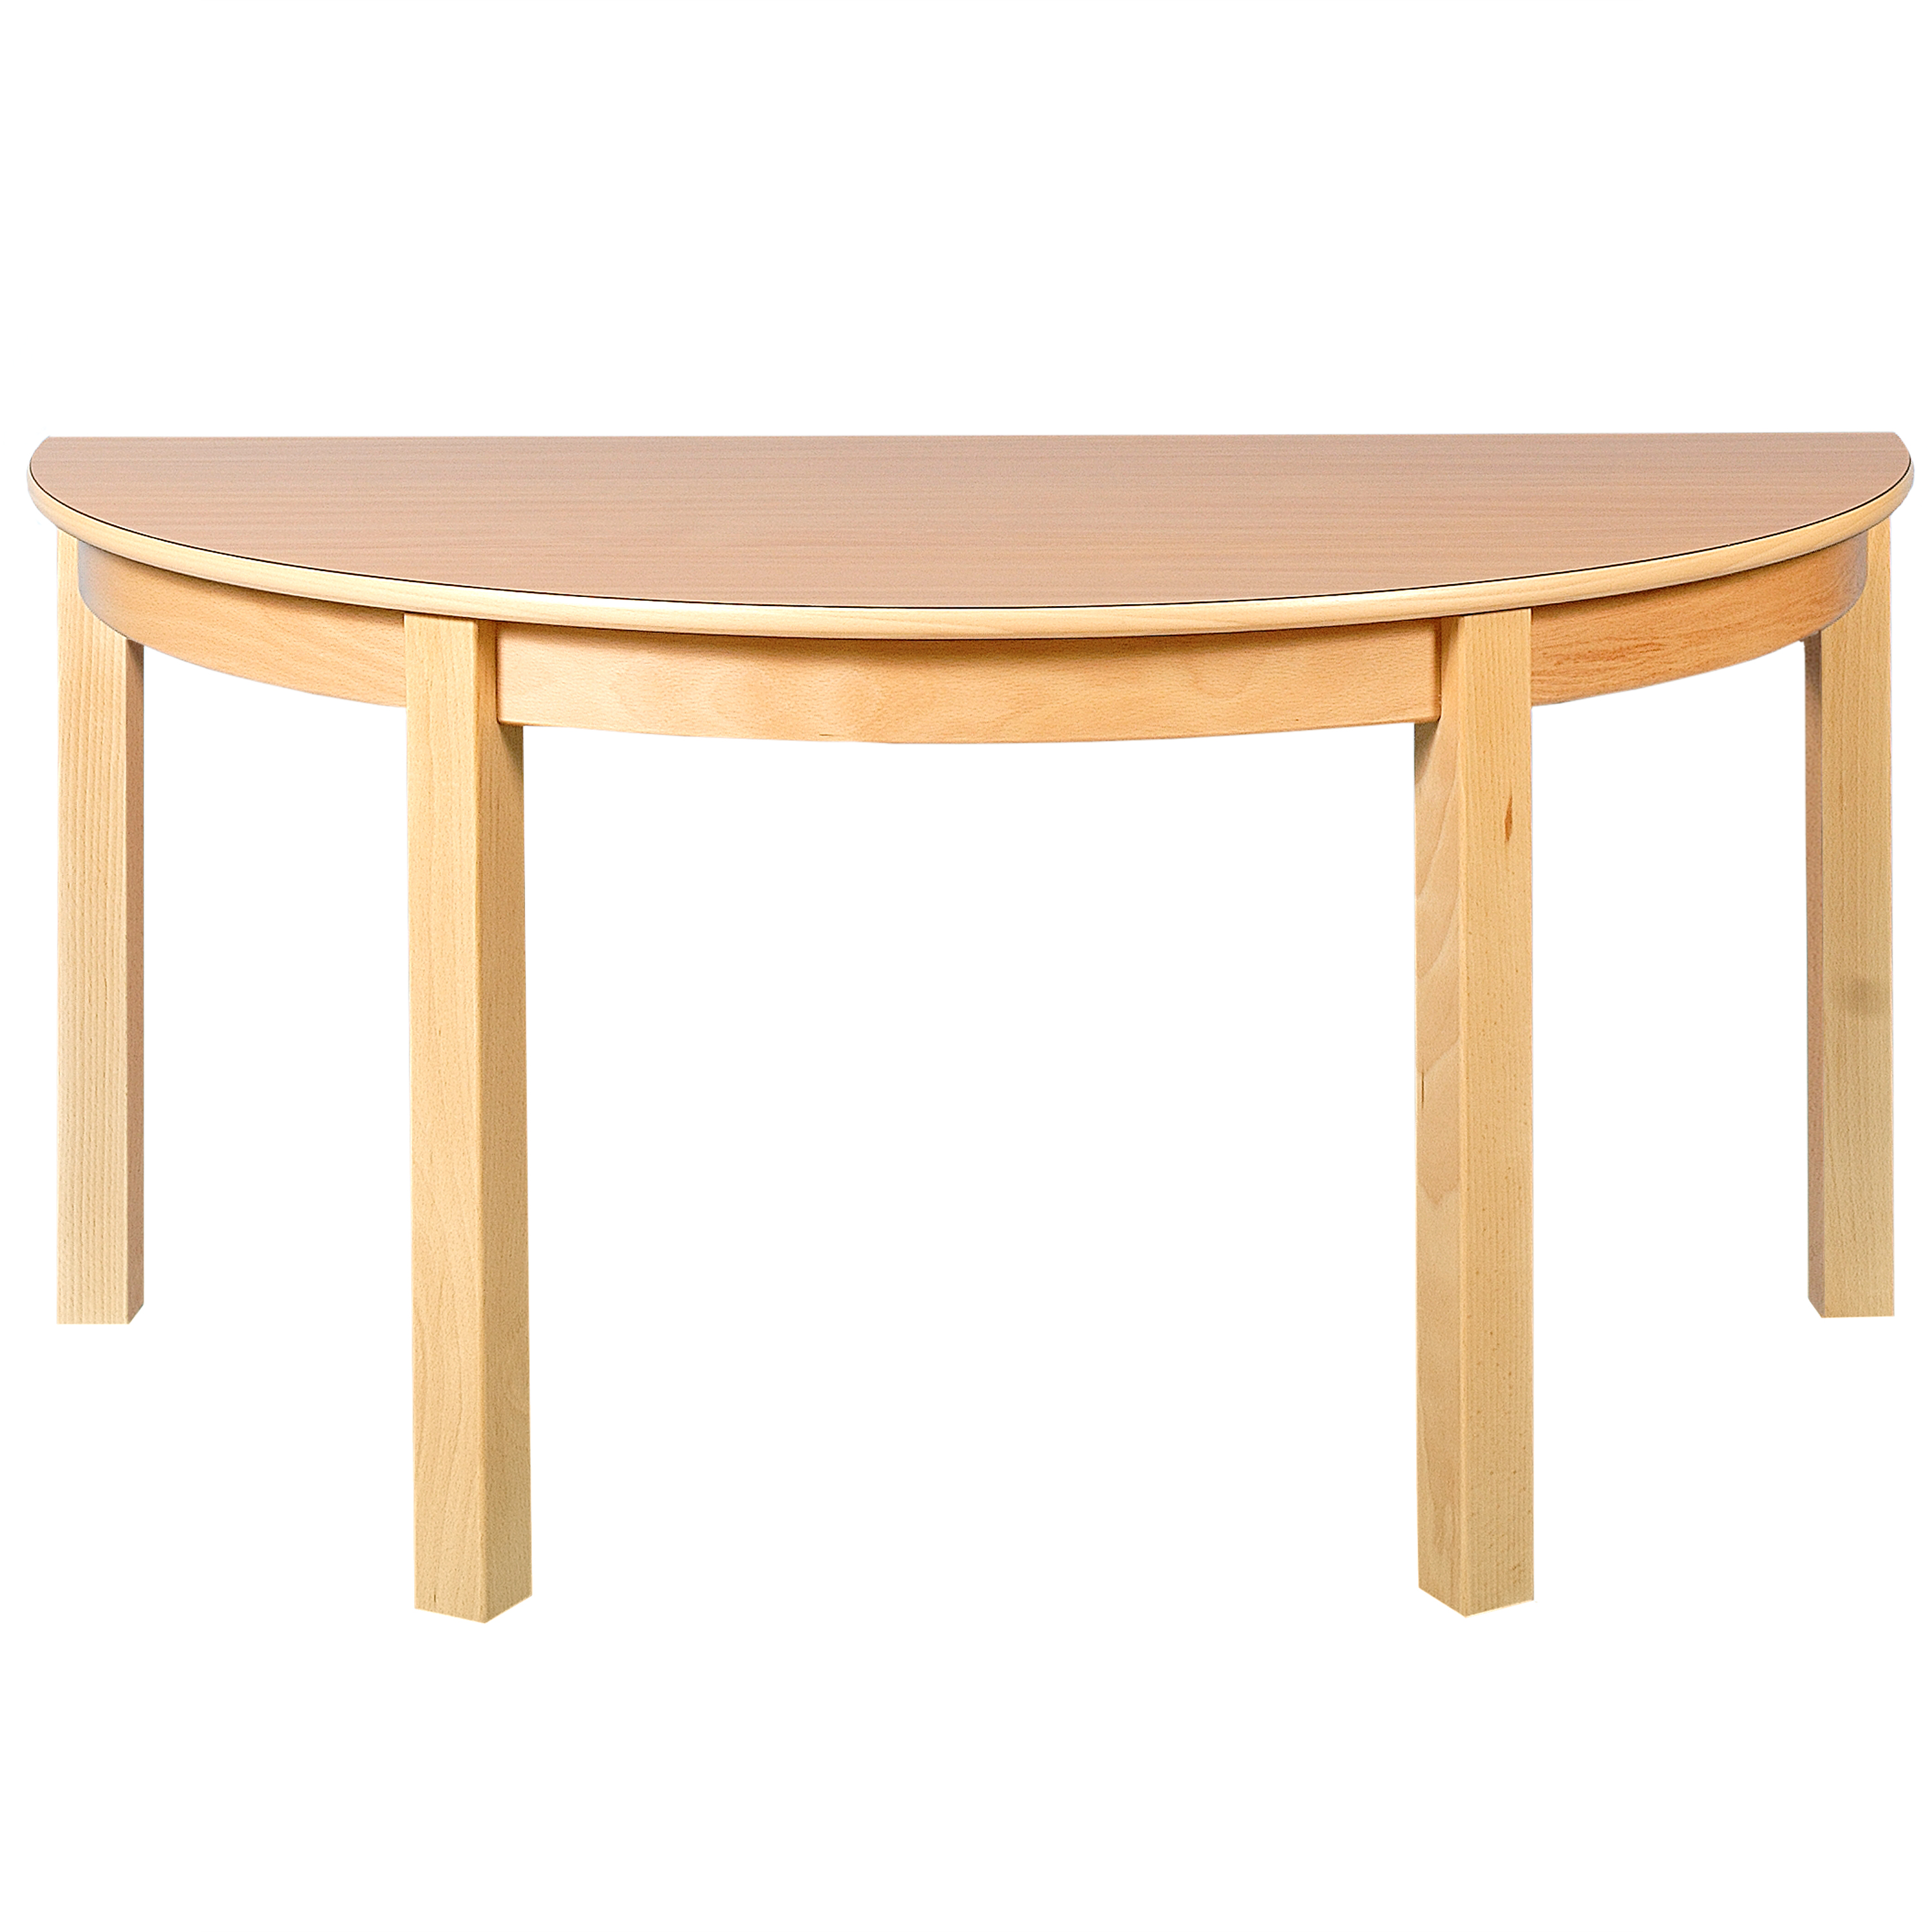 Halbkreis-Tisch, Durchmesser 120 cm, Tischhöhe 52 cm